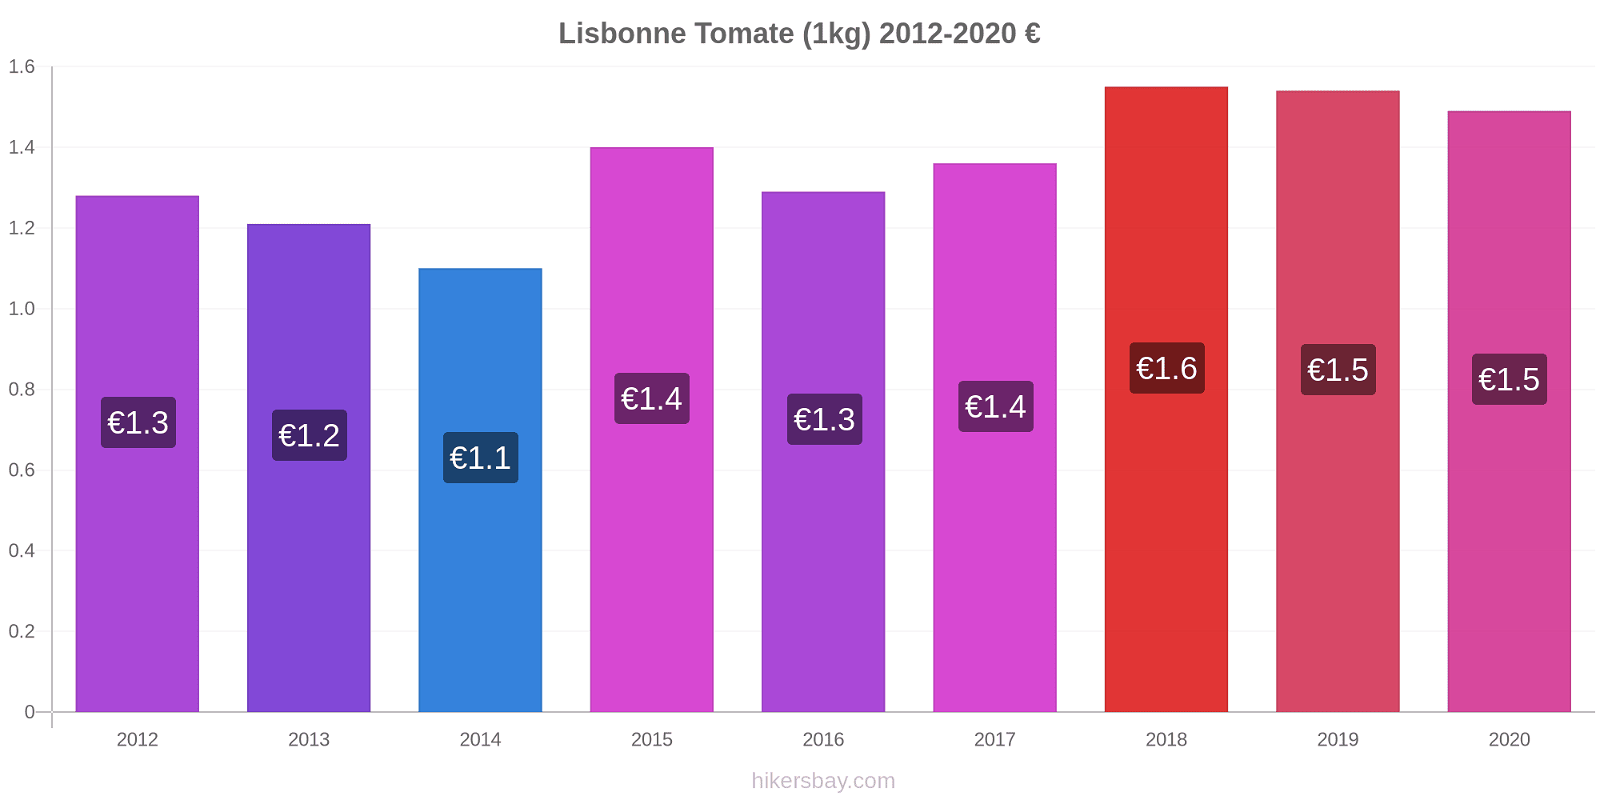 Lisbonne changements de prix Tomate (1kg) hikersbay.com